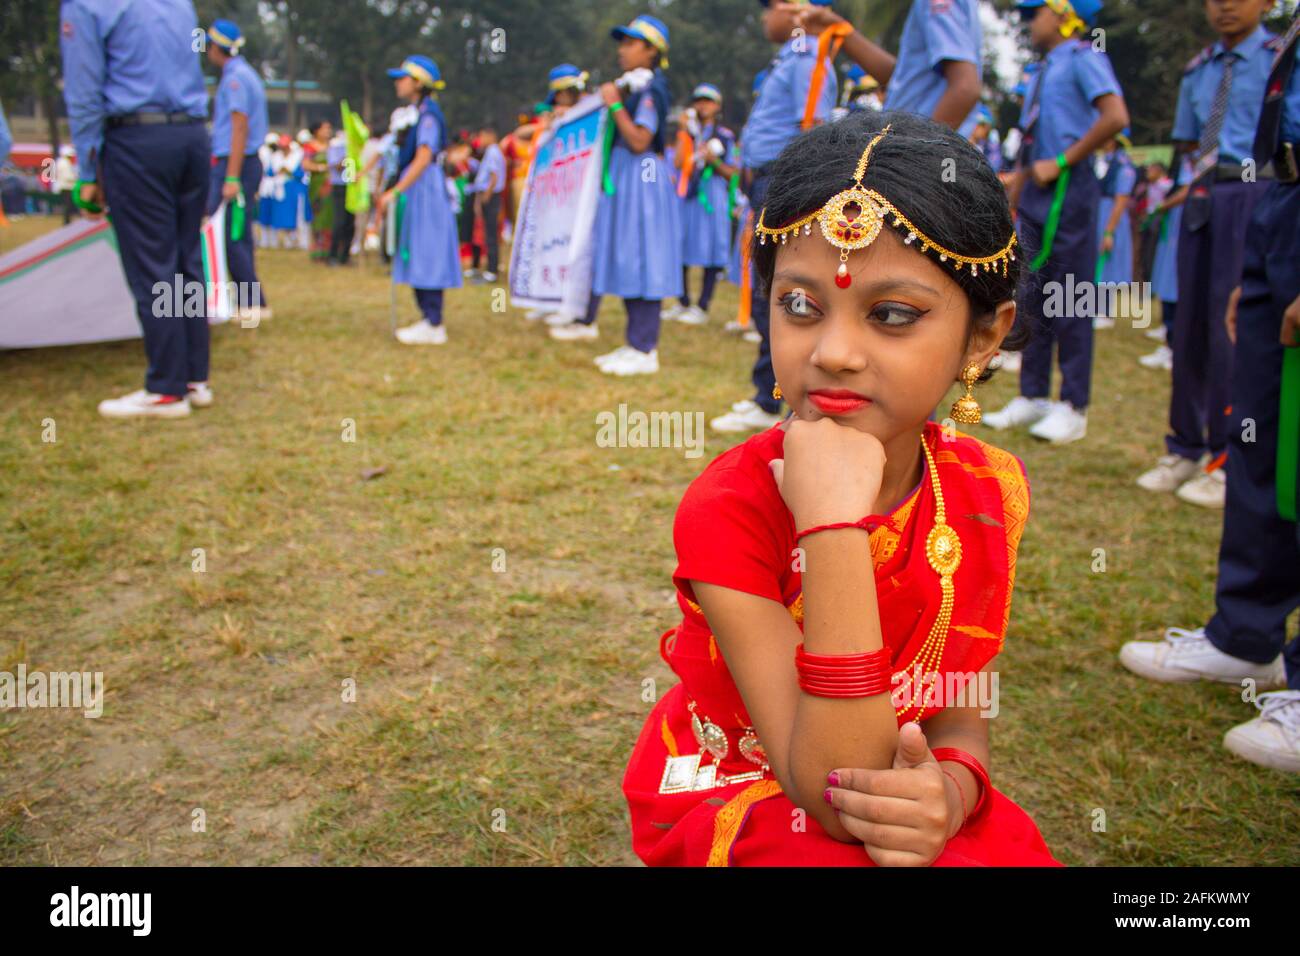 Tradicionalmente se celebra el día de la victoria de Bangladesh: Asia del sur linda chica participando Fancy Dress la competencia por el uso de joyas y vestuario Foto de stock